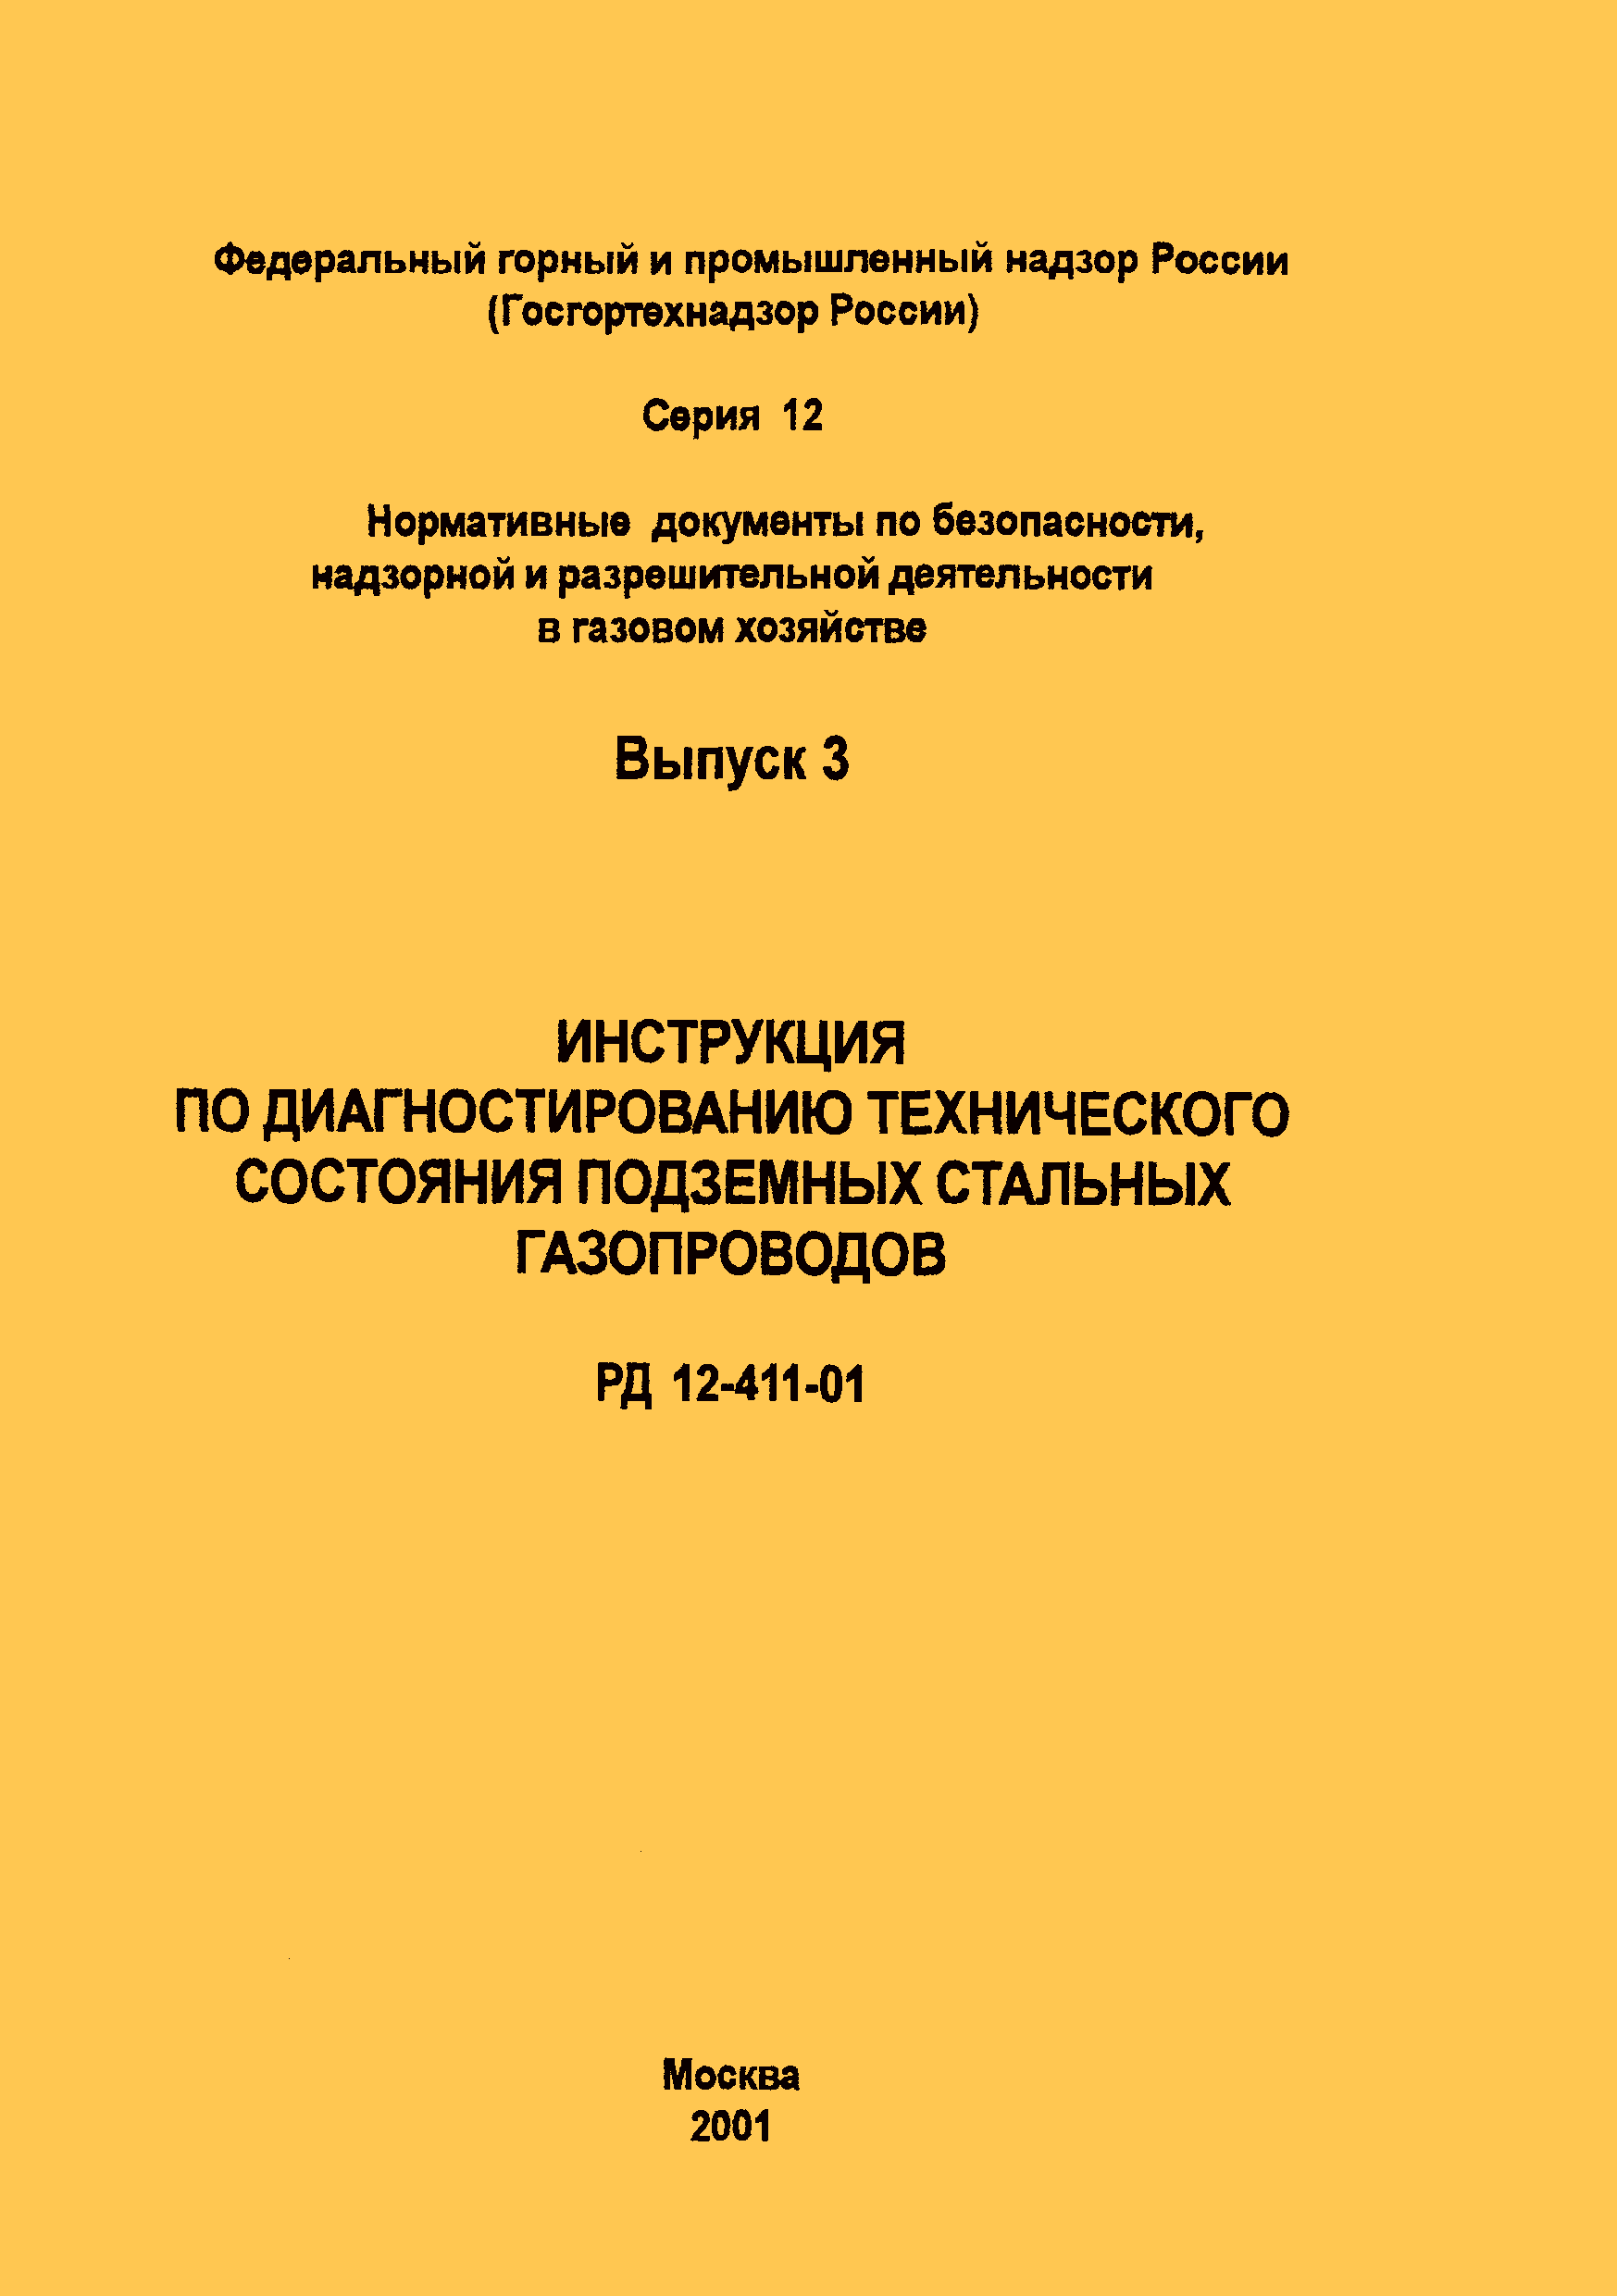 РД 12-411-01